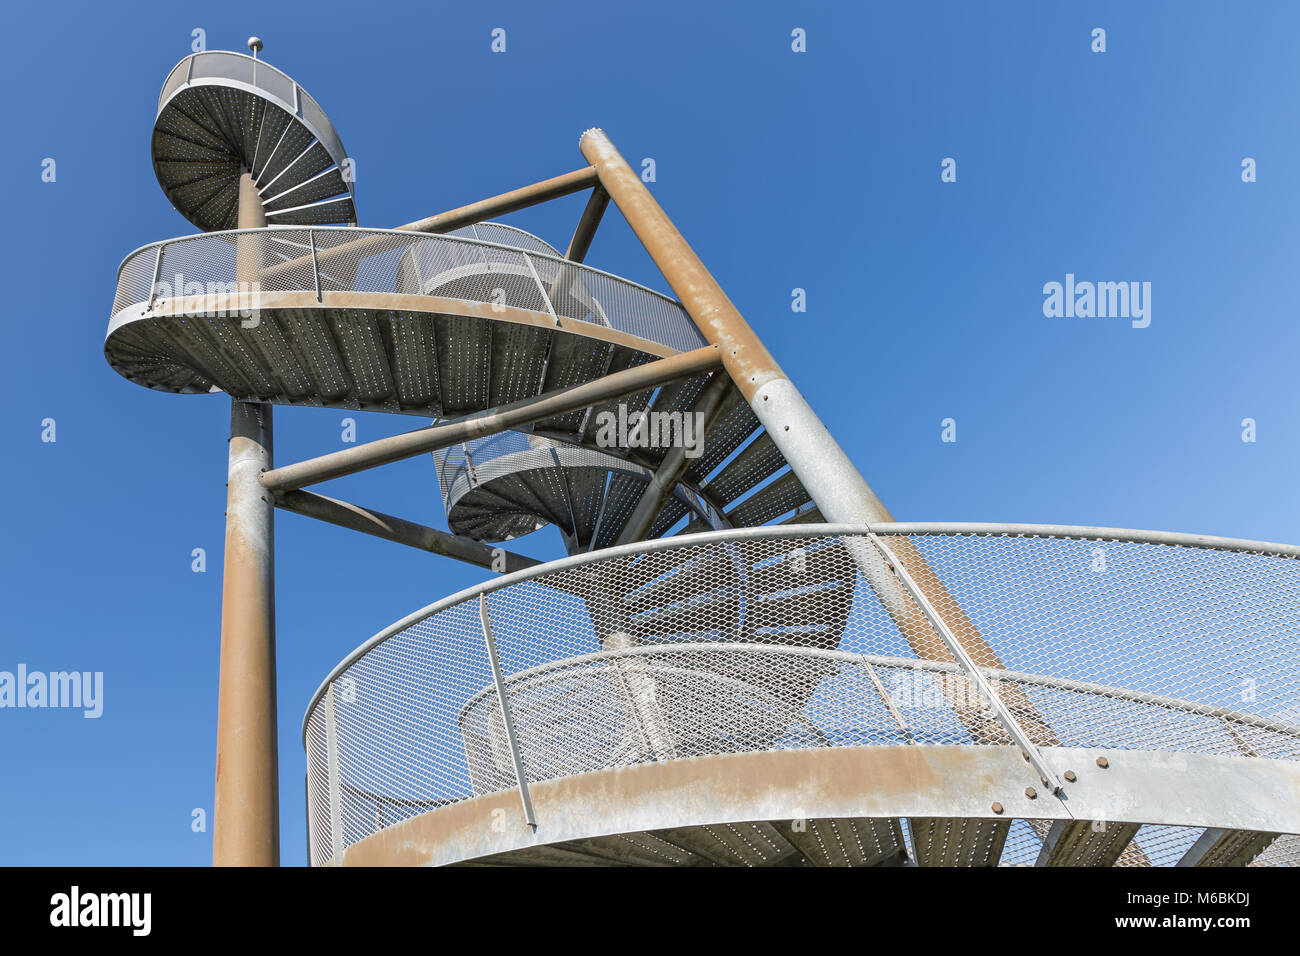 Tour faite d'escaliers en spirale près de l'aéroport de Lelystad, Pays-Bas Banque D'Images